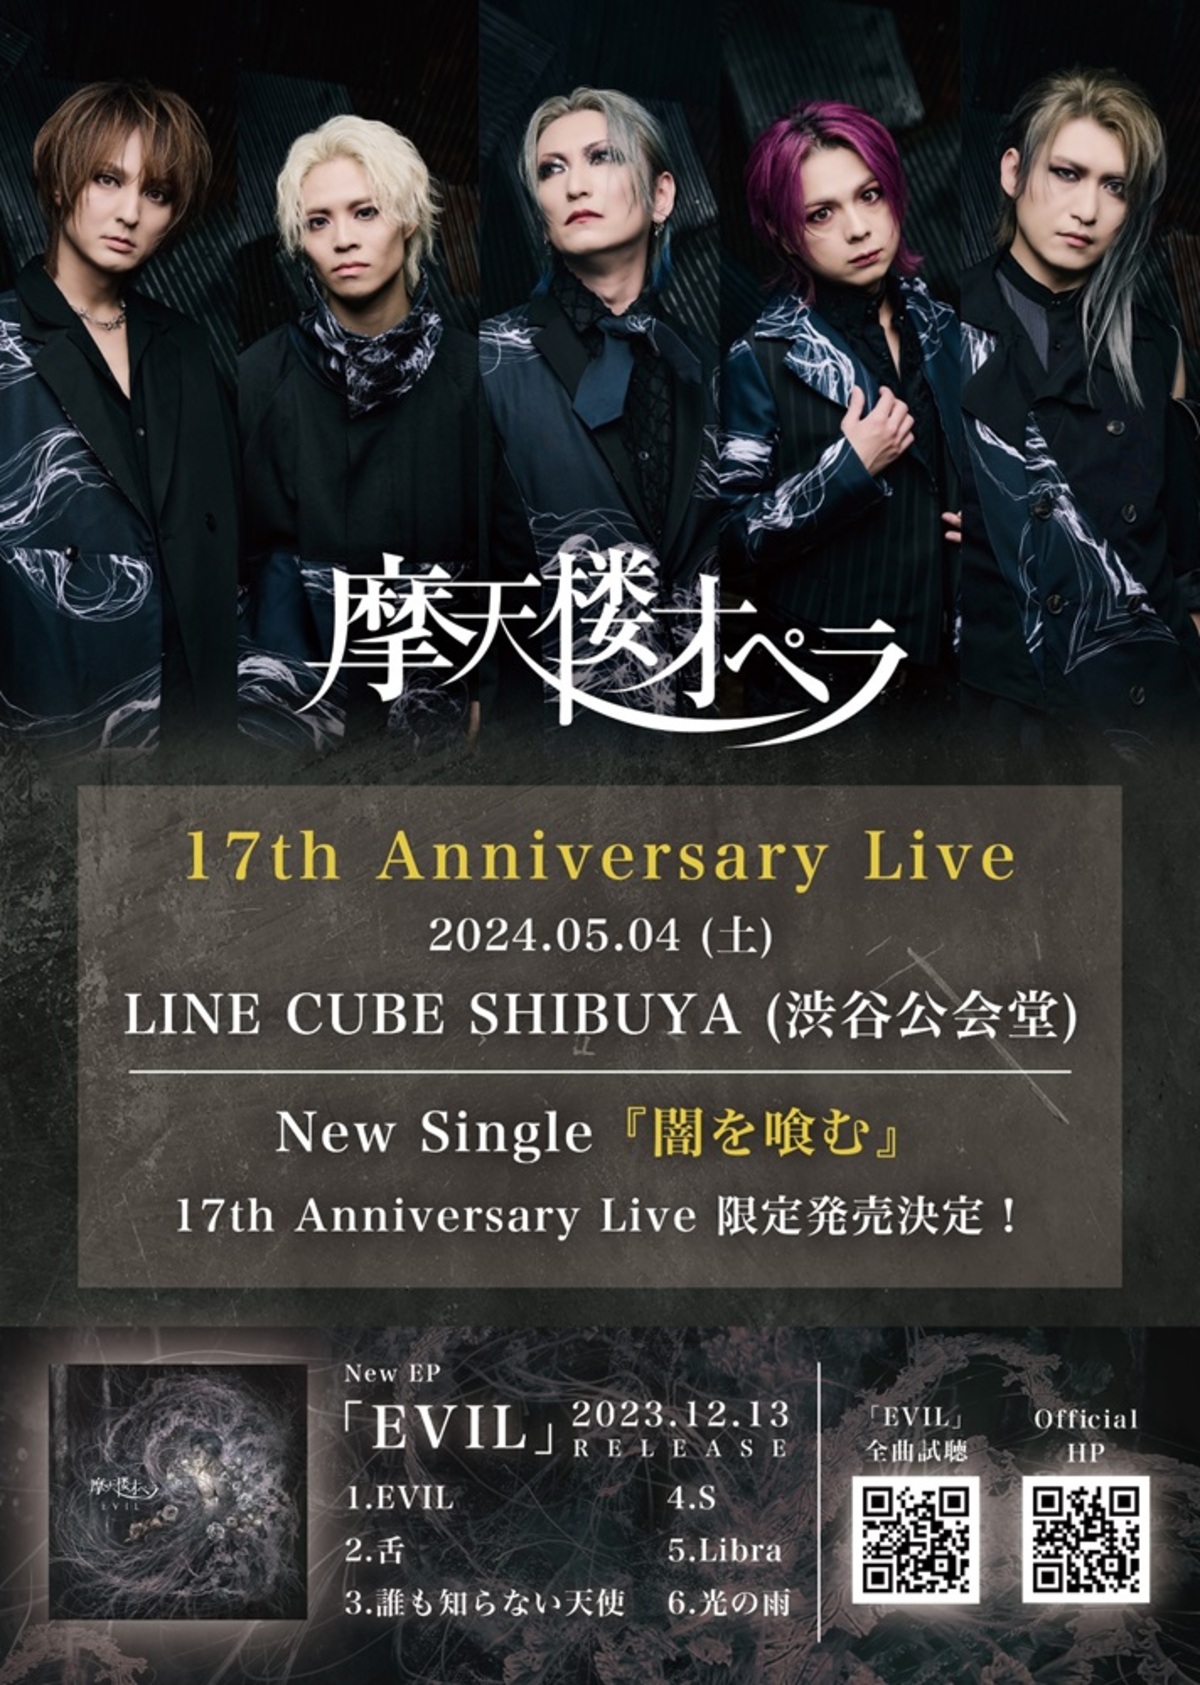 摩天楼オペラ、5/4のLINE CUBE SHIBUYA公演にてCD『闇を喰む』リリース 